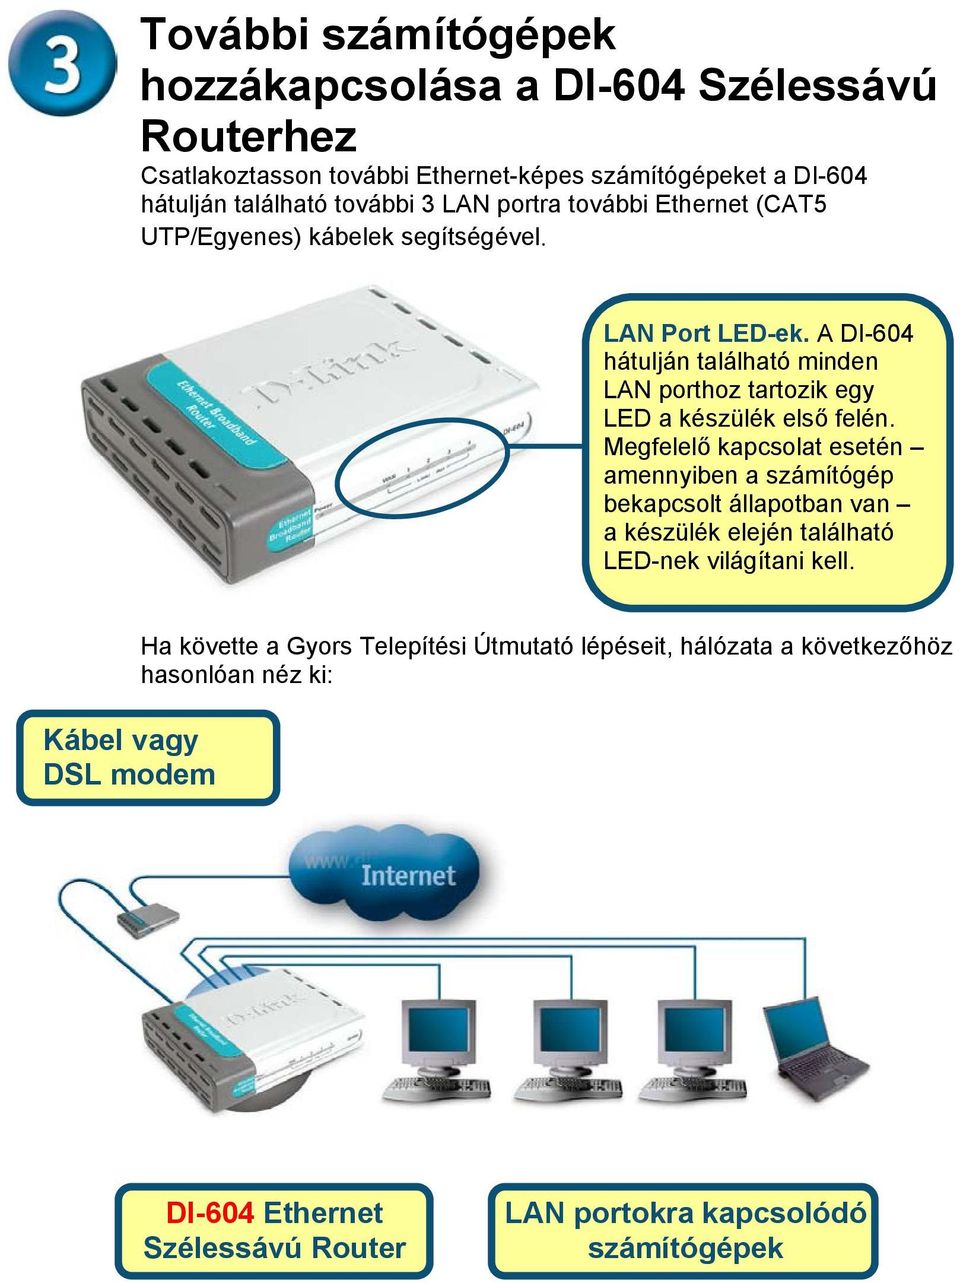 A DI-604 hátulján található minden LAN porthoz tartozik egy LED a készülék első felén.